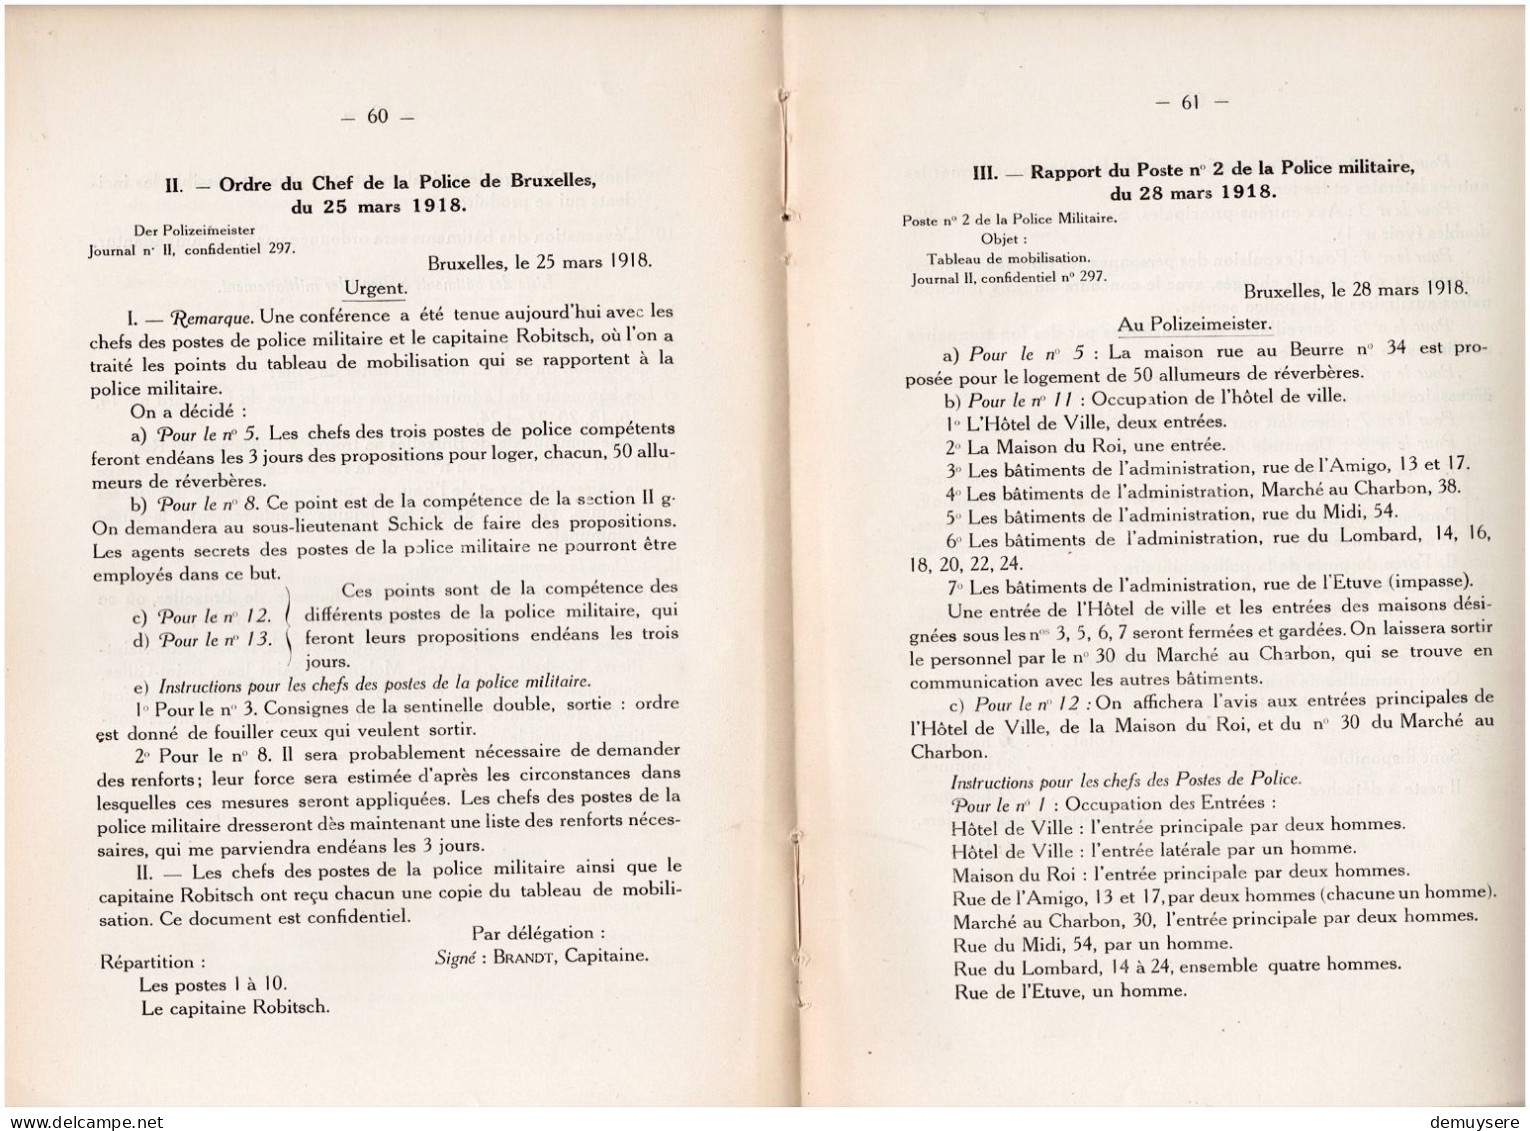 0404 1 - BULLETIN DE LA COMMISSION DES ARCHIVES DE LA GUERRE 1924 - 104 PAGES - Français